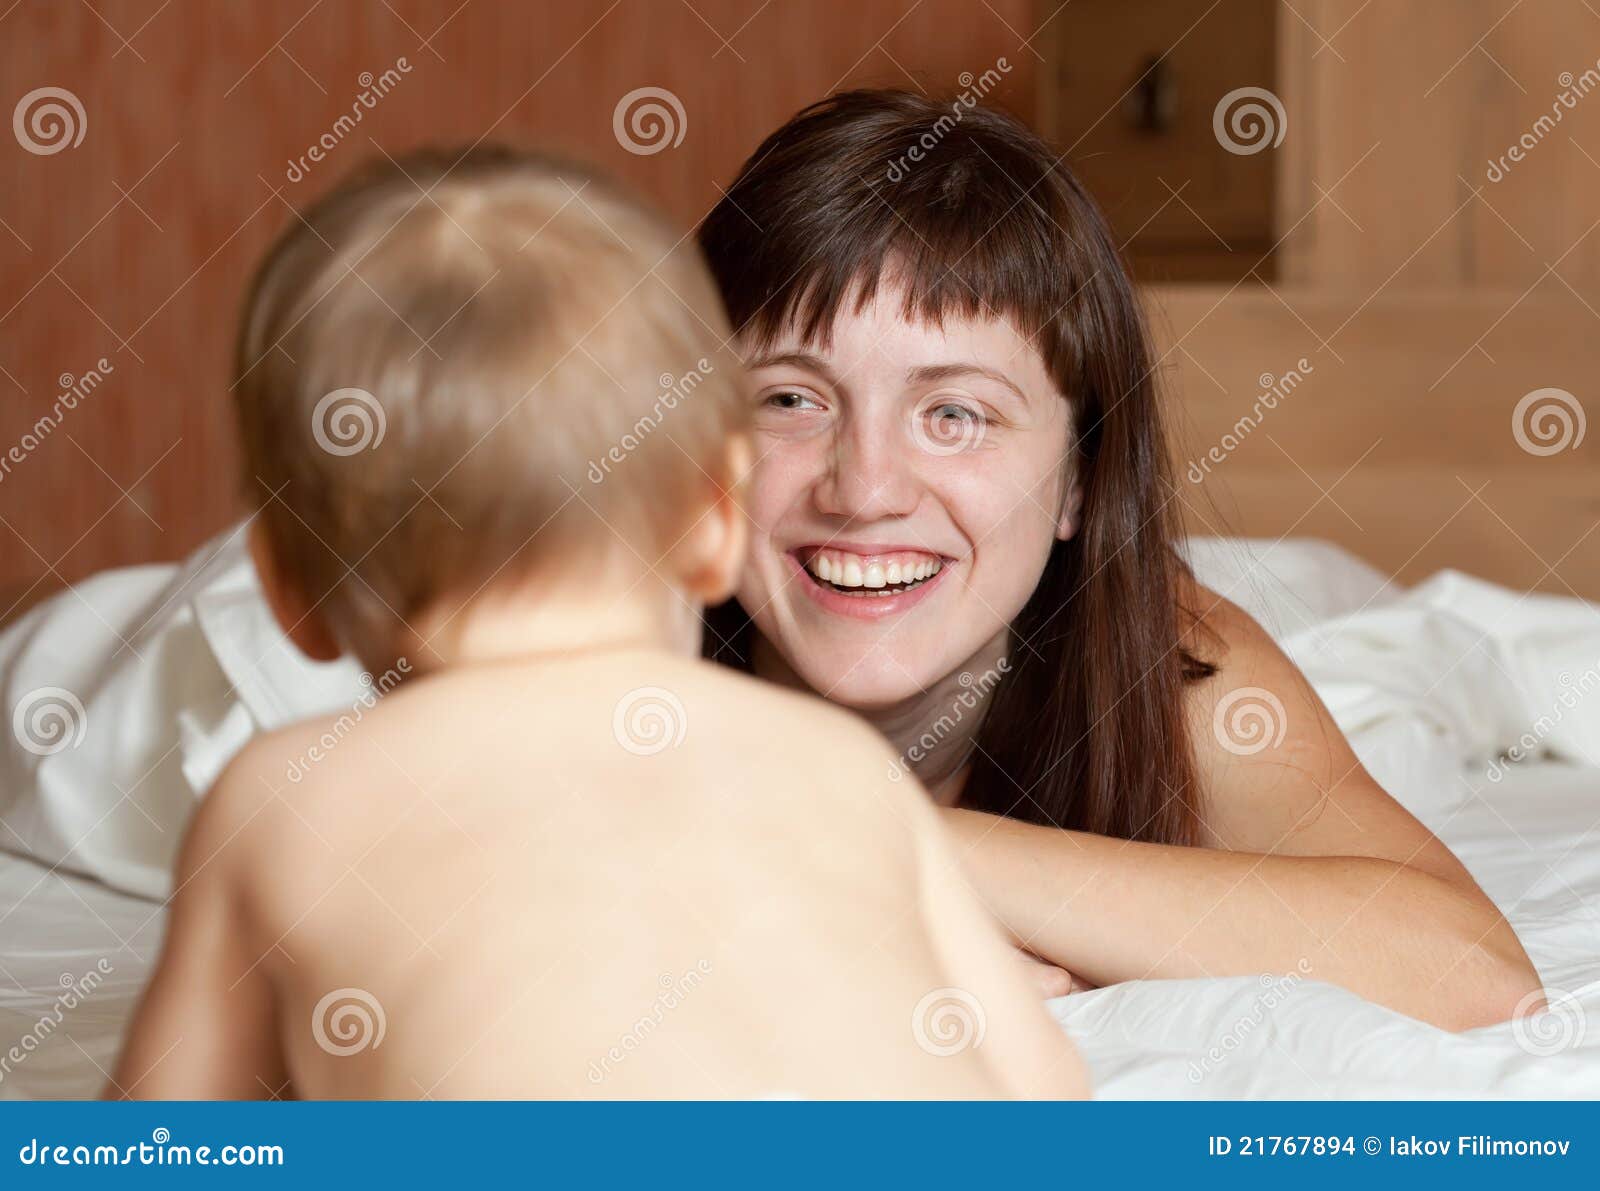 порно маленькие мальчики ебутся с мамами фото 92